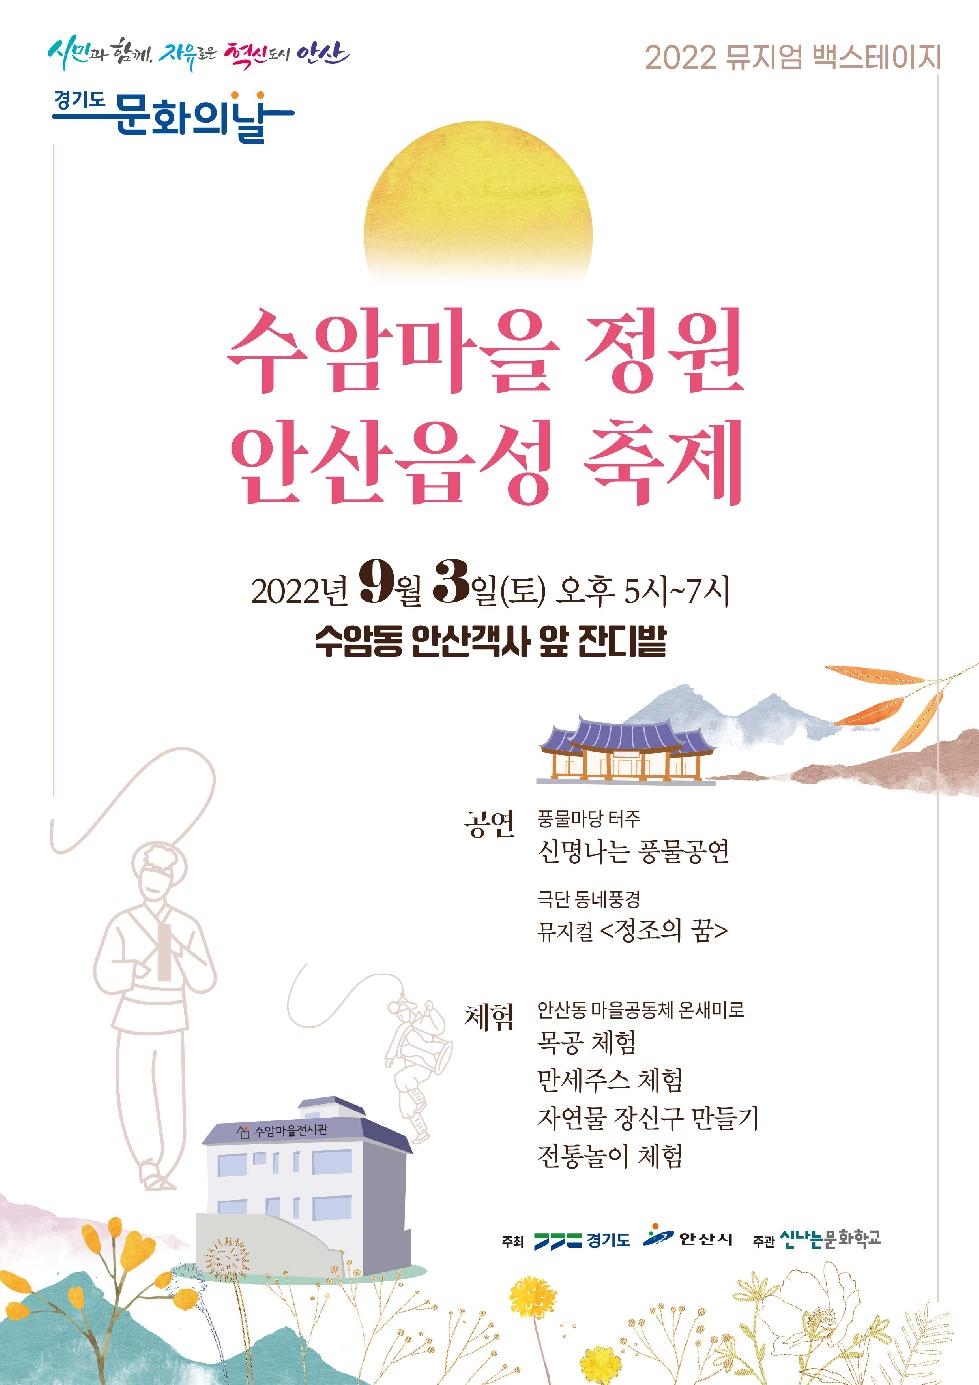 안산시, 2022 뮤지엄 백스테이지‘수암마을 정원 안산읍성’개최